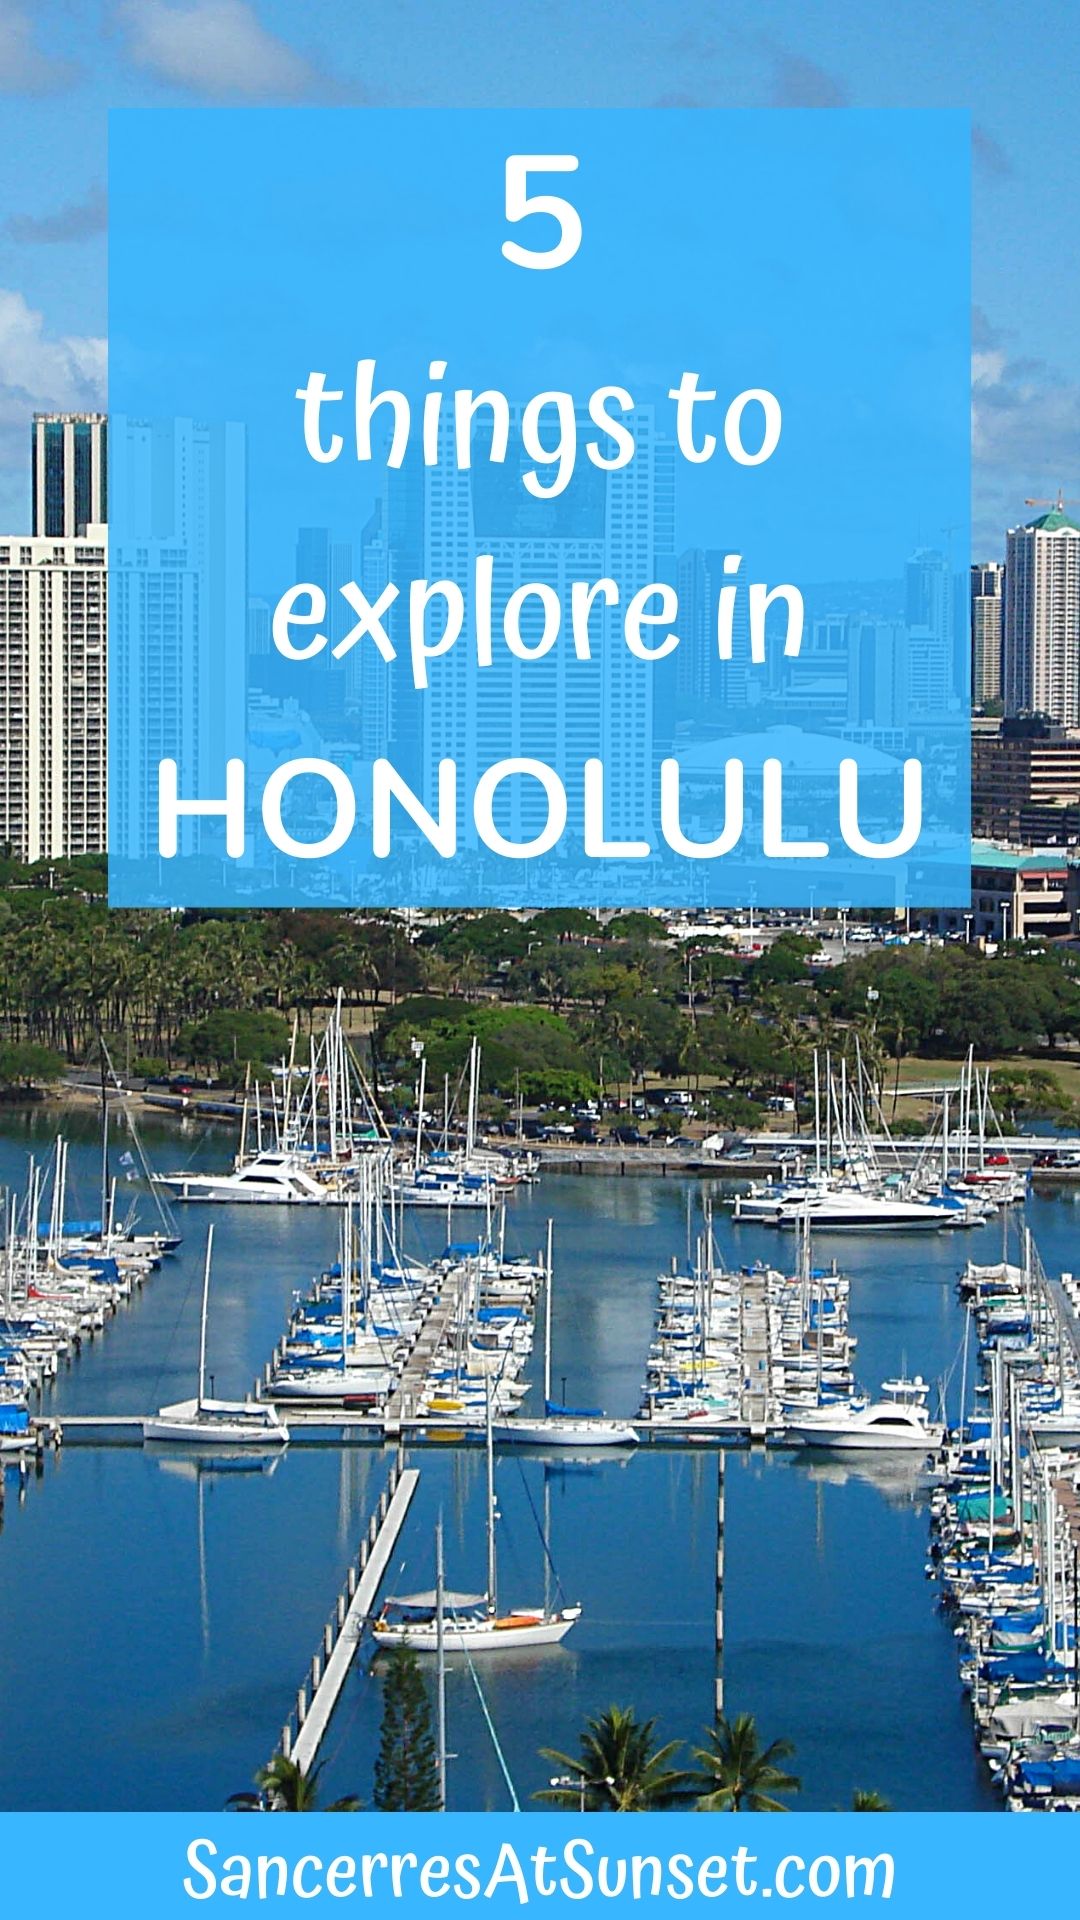 Five Things to Explore in Honolulu